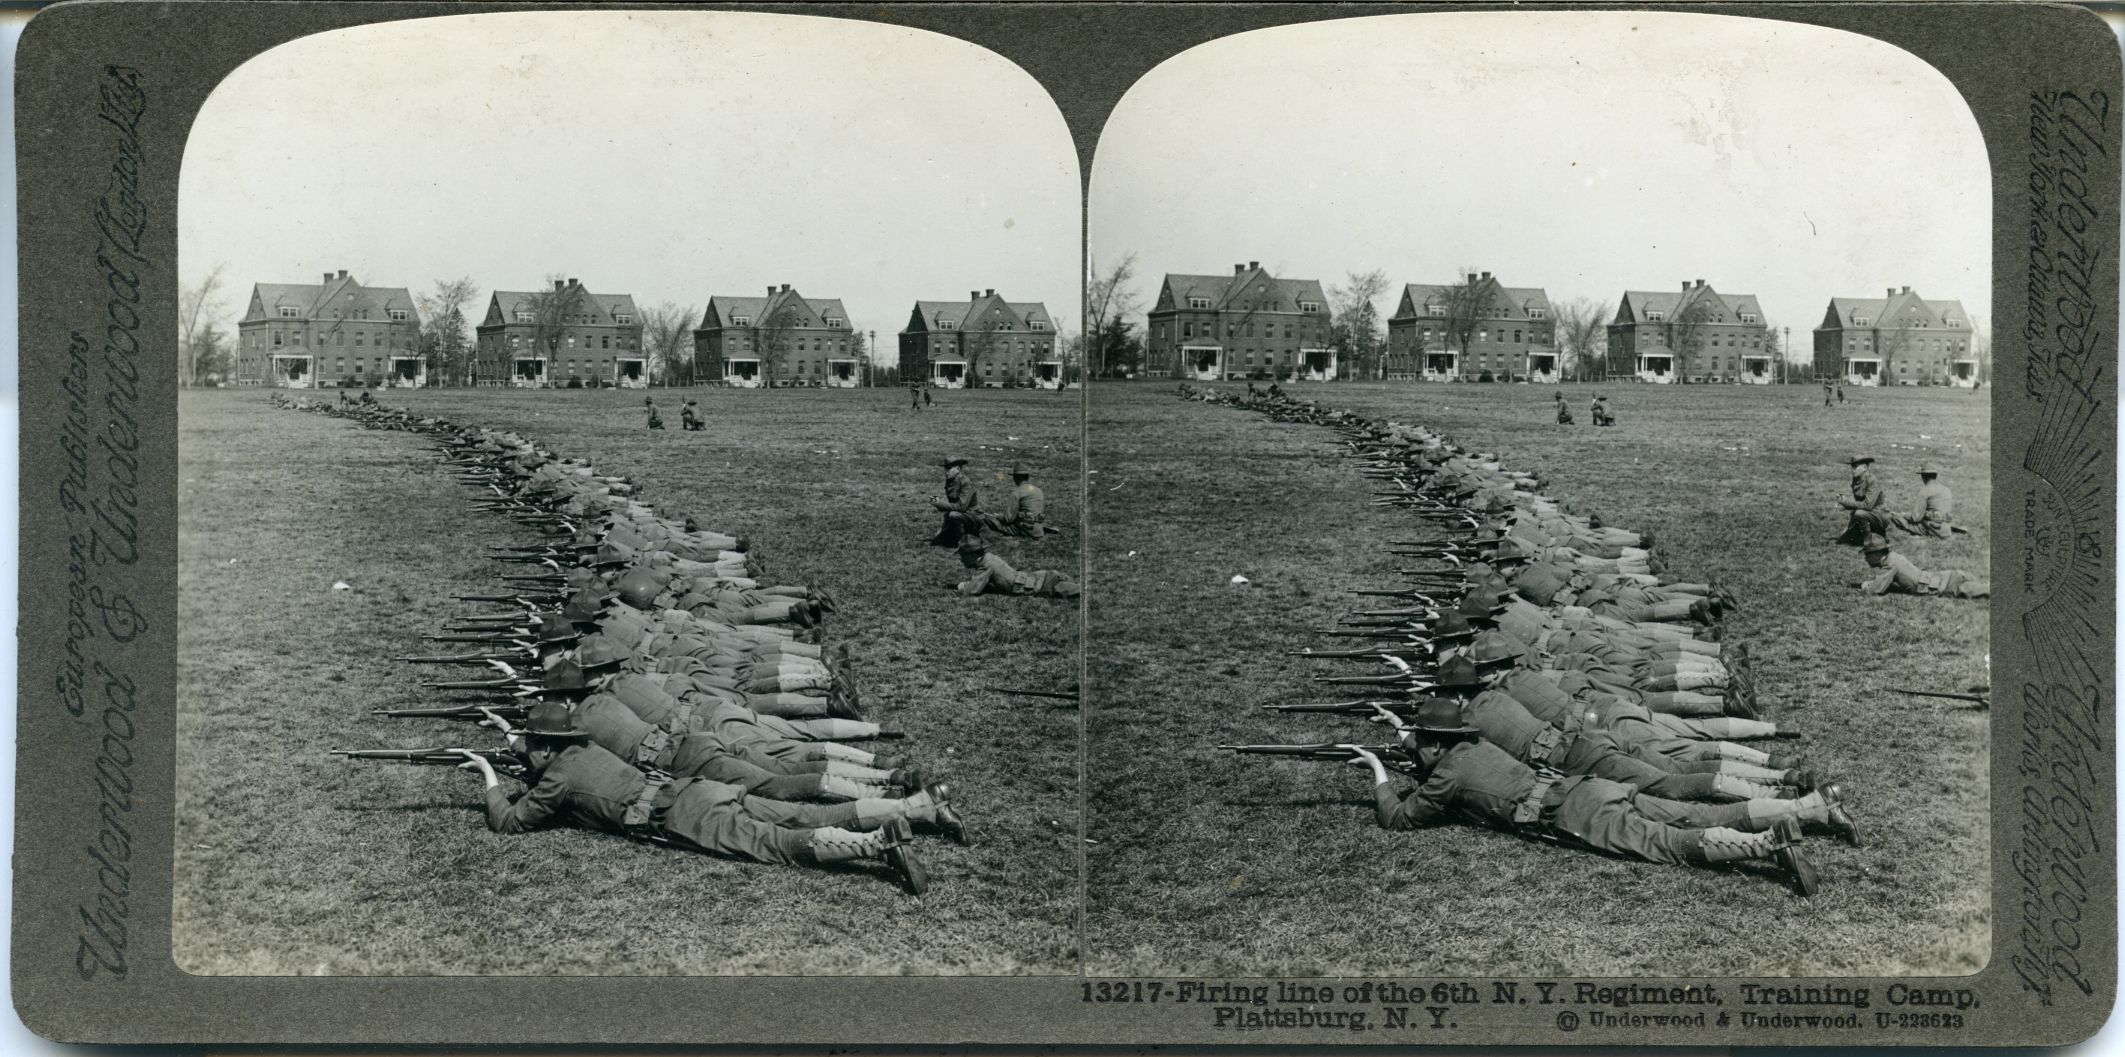 Firing line of the 6th N.Y. Regiment Training Camp, Plattsburg, N.Y.